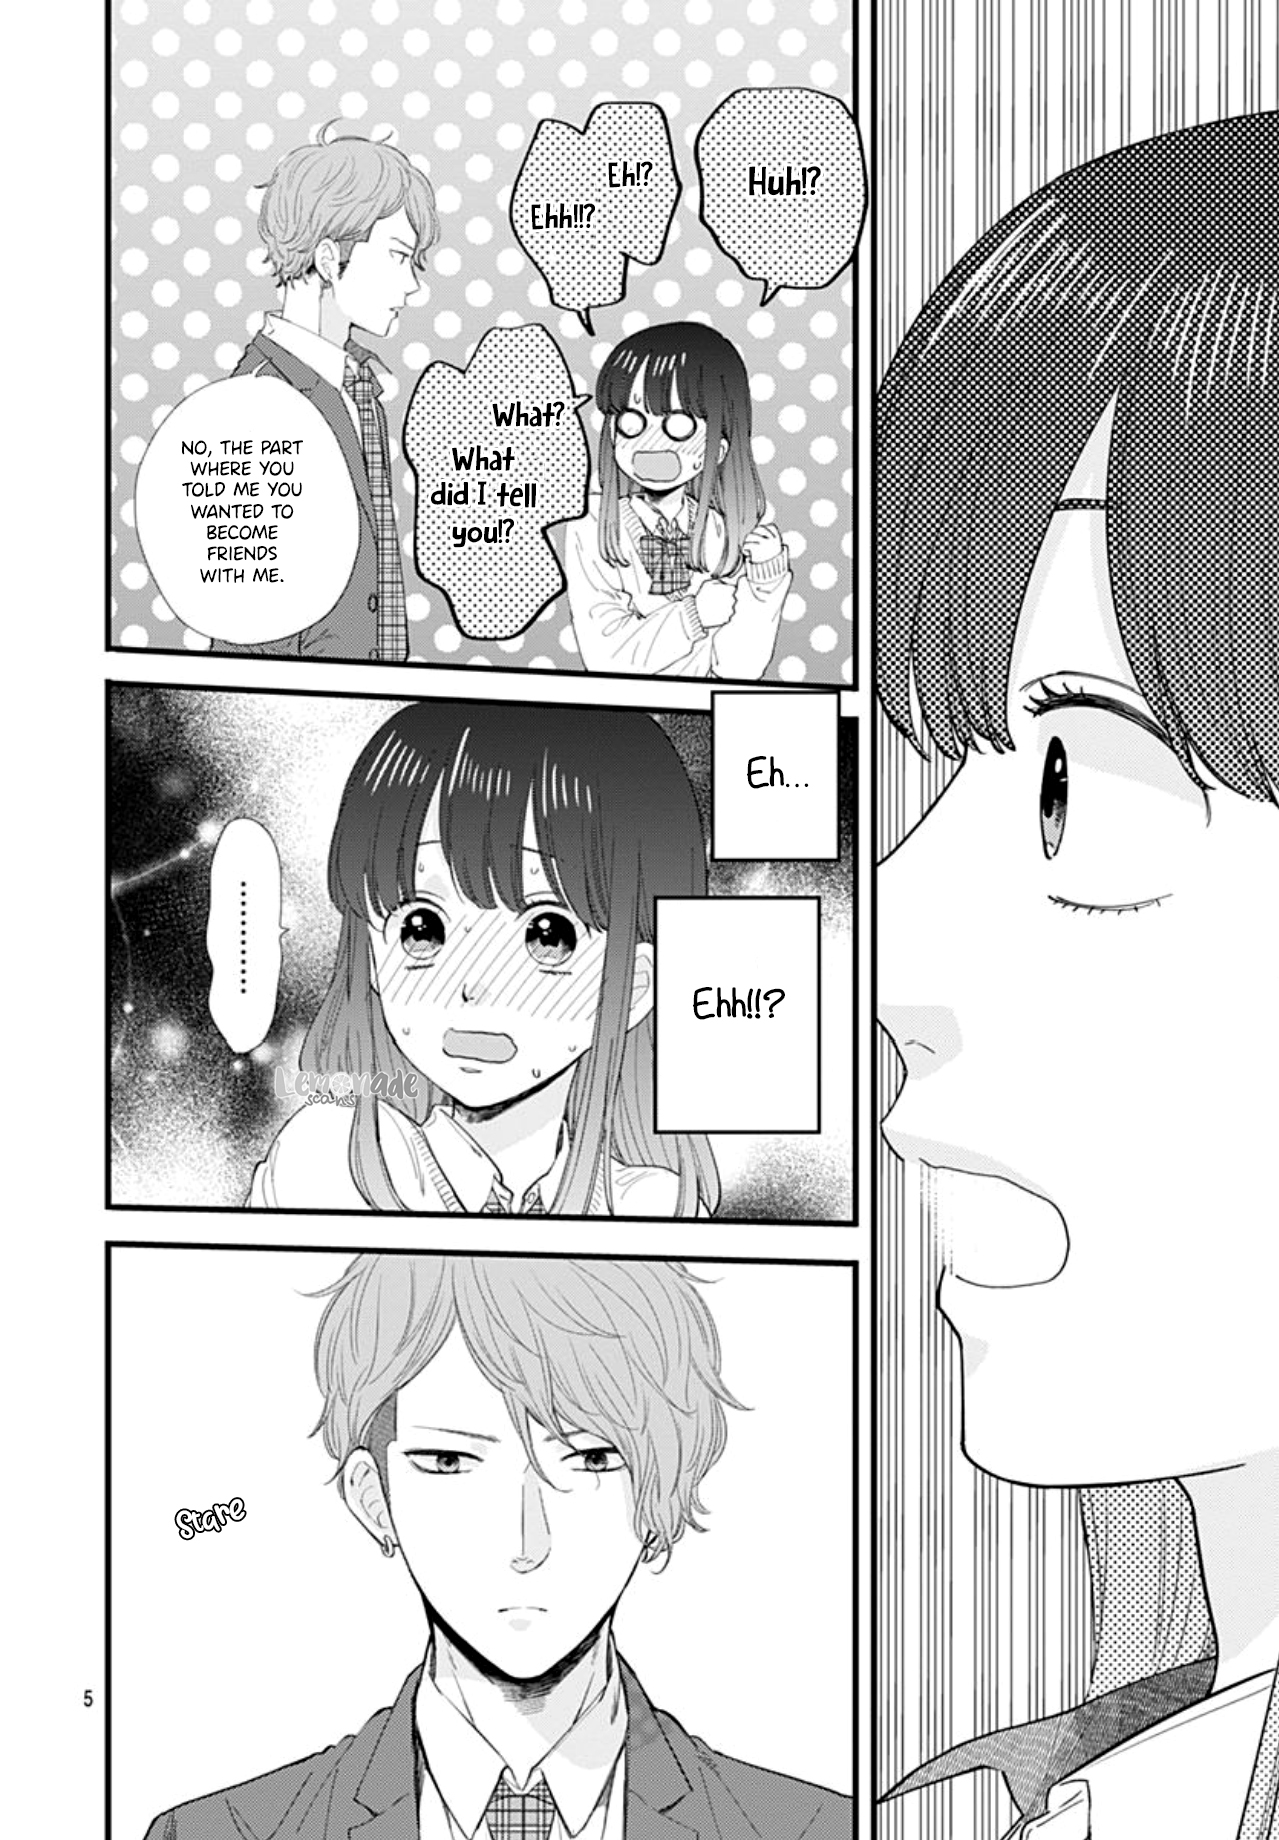 Ima, Koi wo Shite Imasu Vol. 1 Ch. 2 Boyfriend and Girlfriend